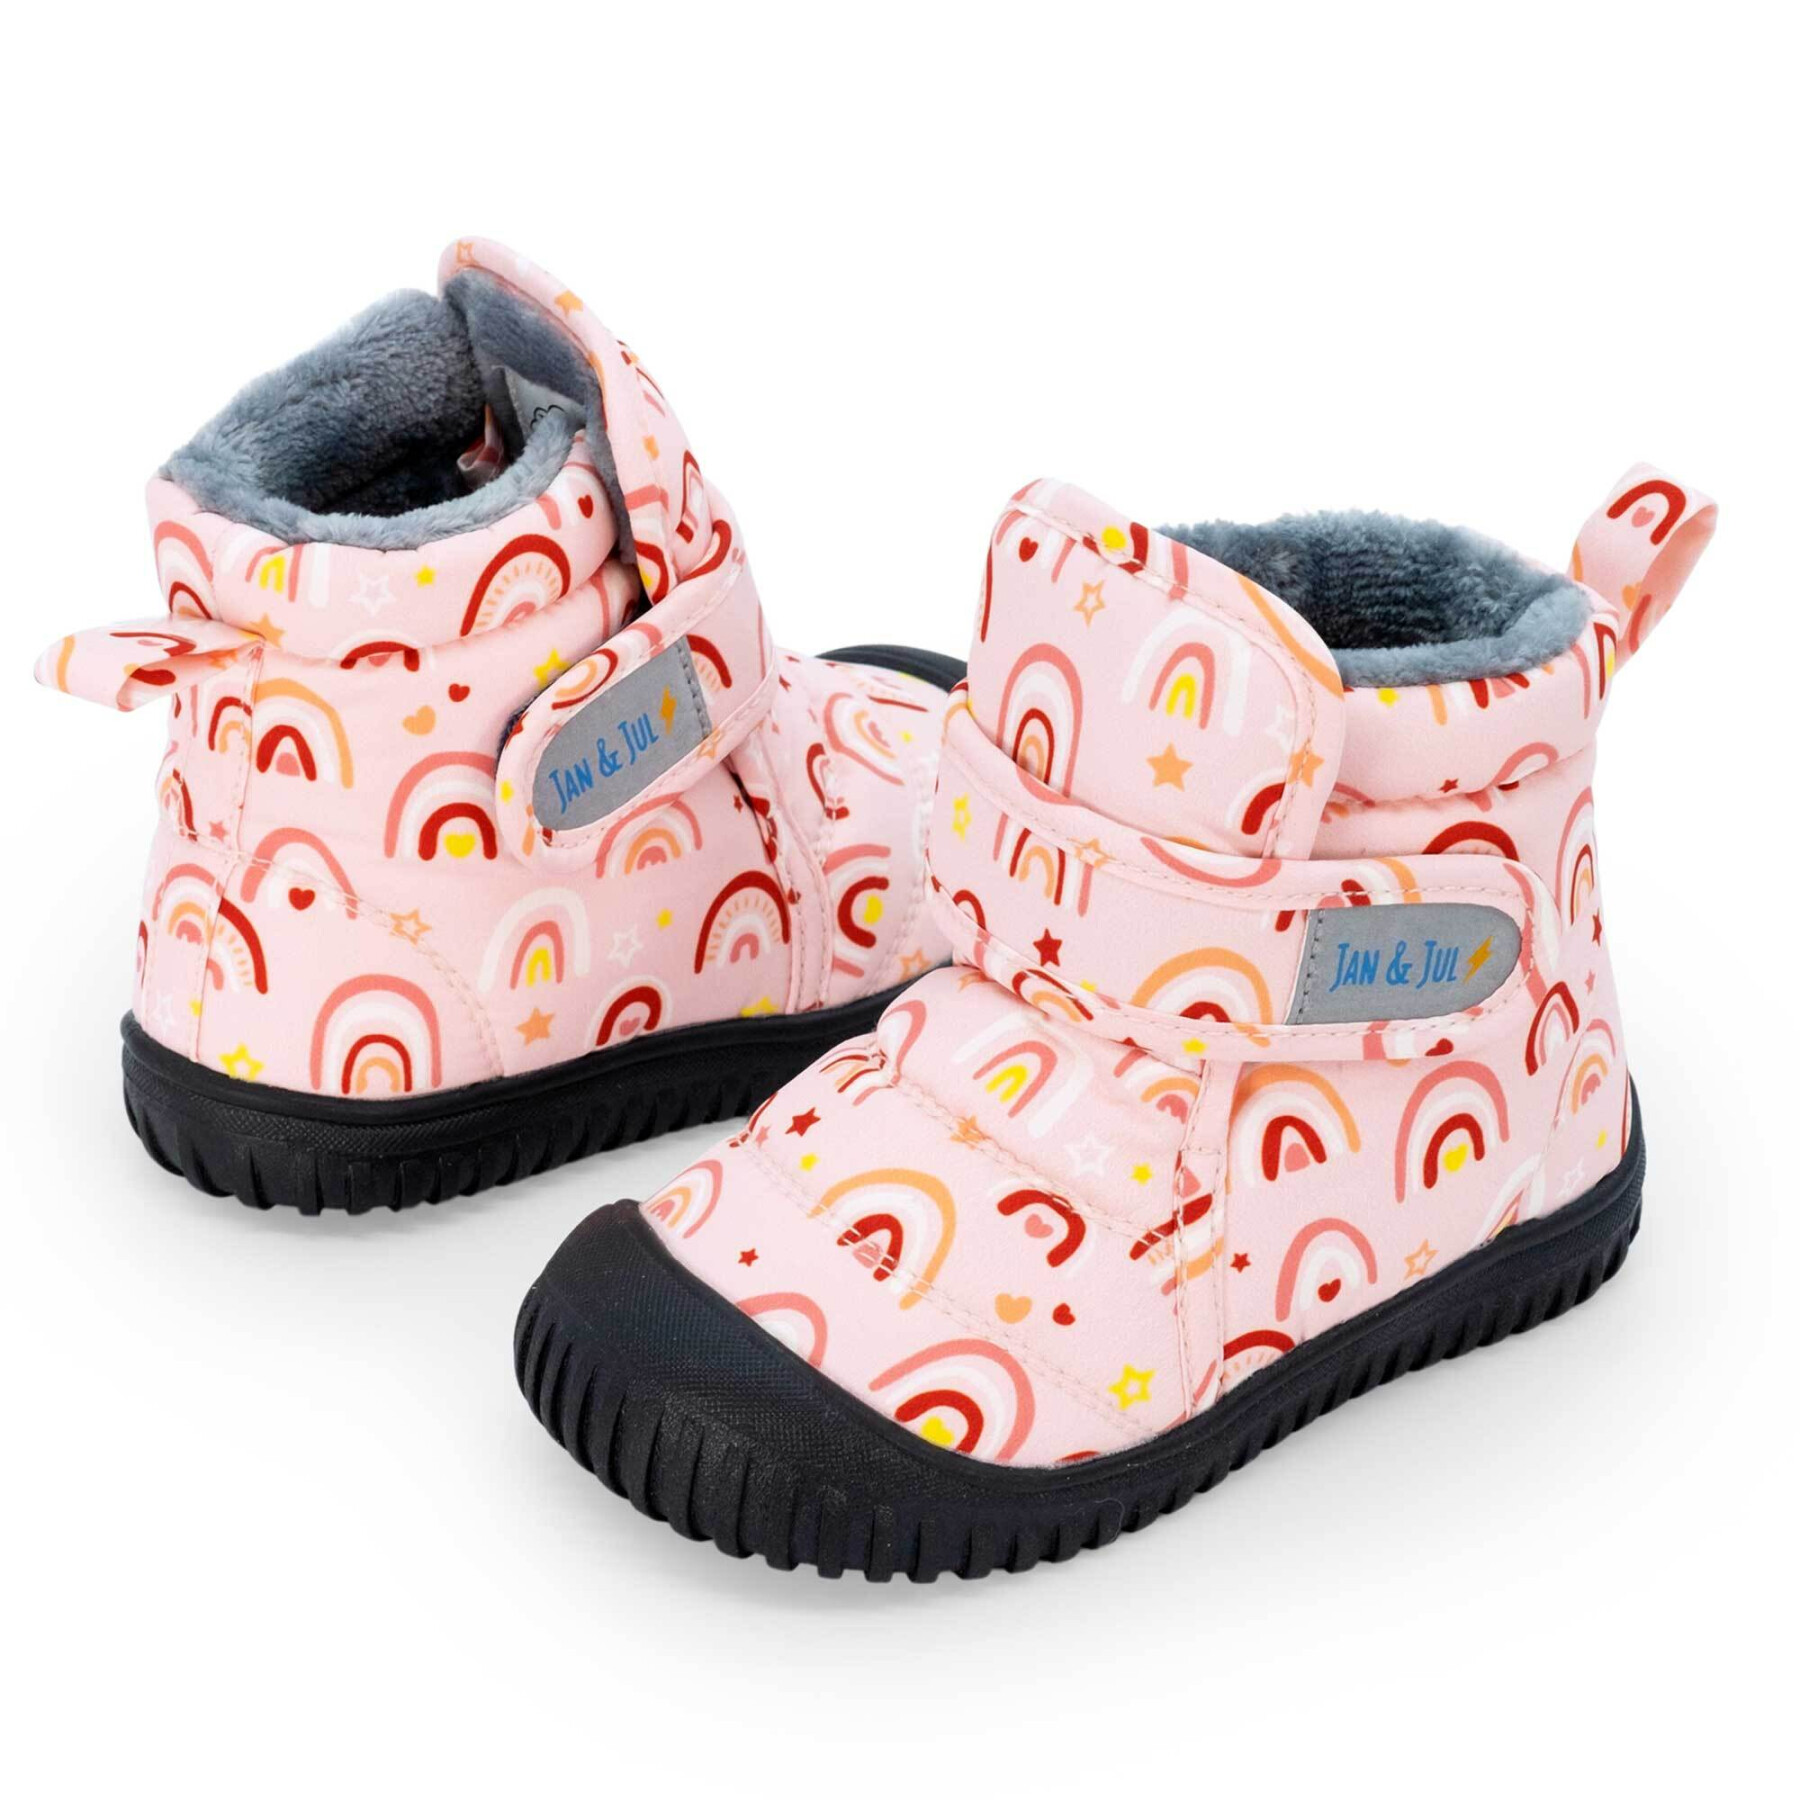 Isolerende laarzen voor babymeisjes Jan & Jul